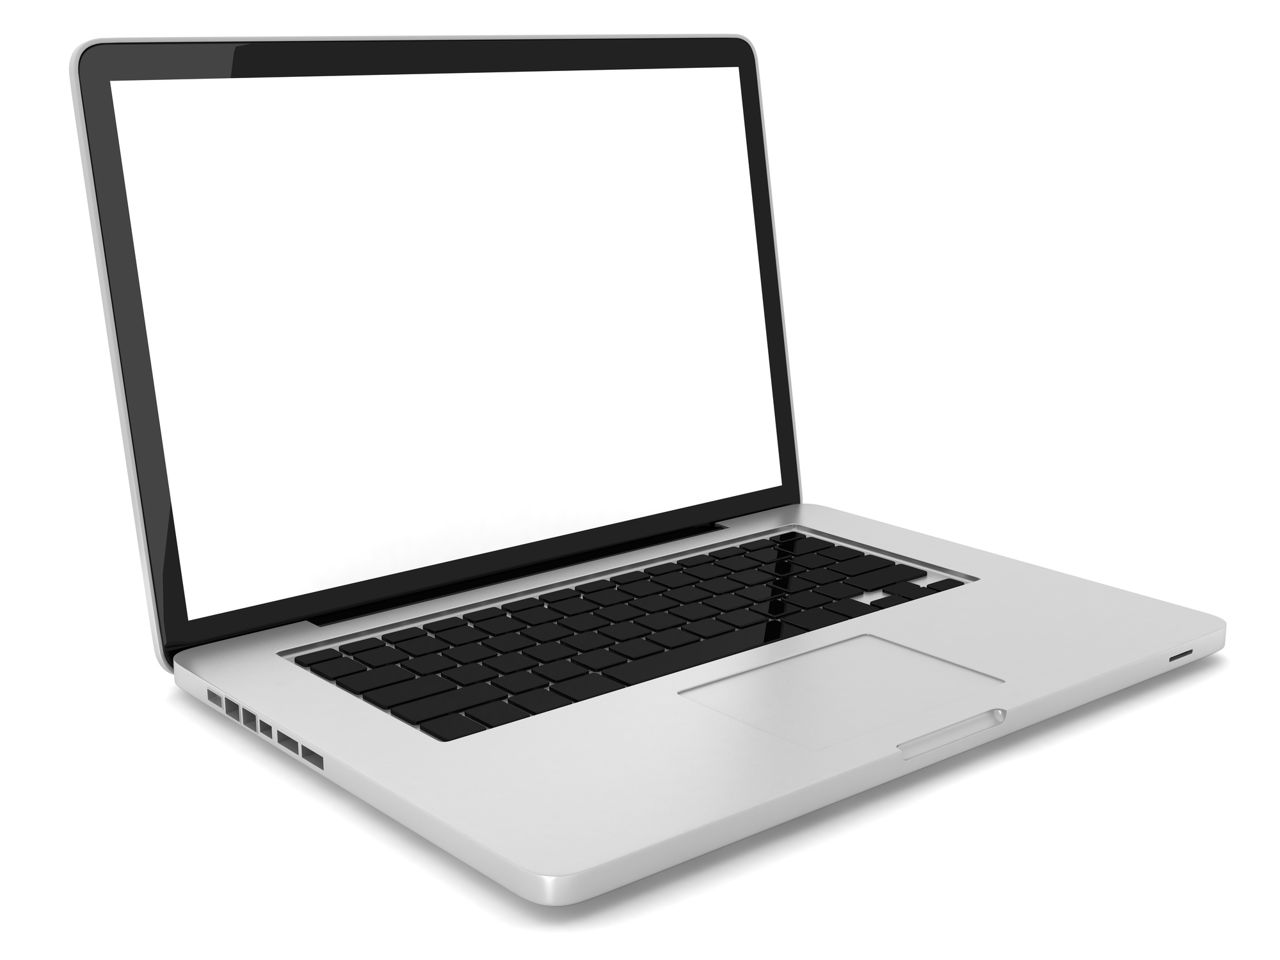 Best Laptops Under $500